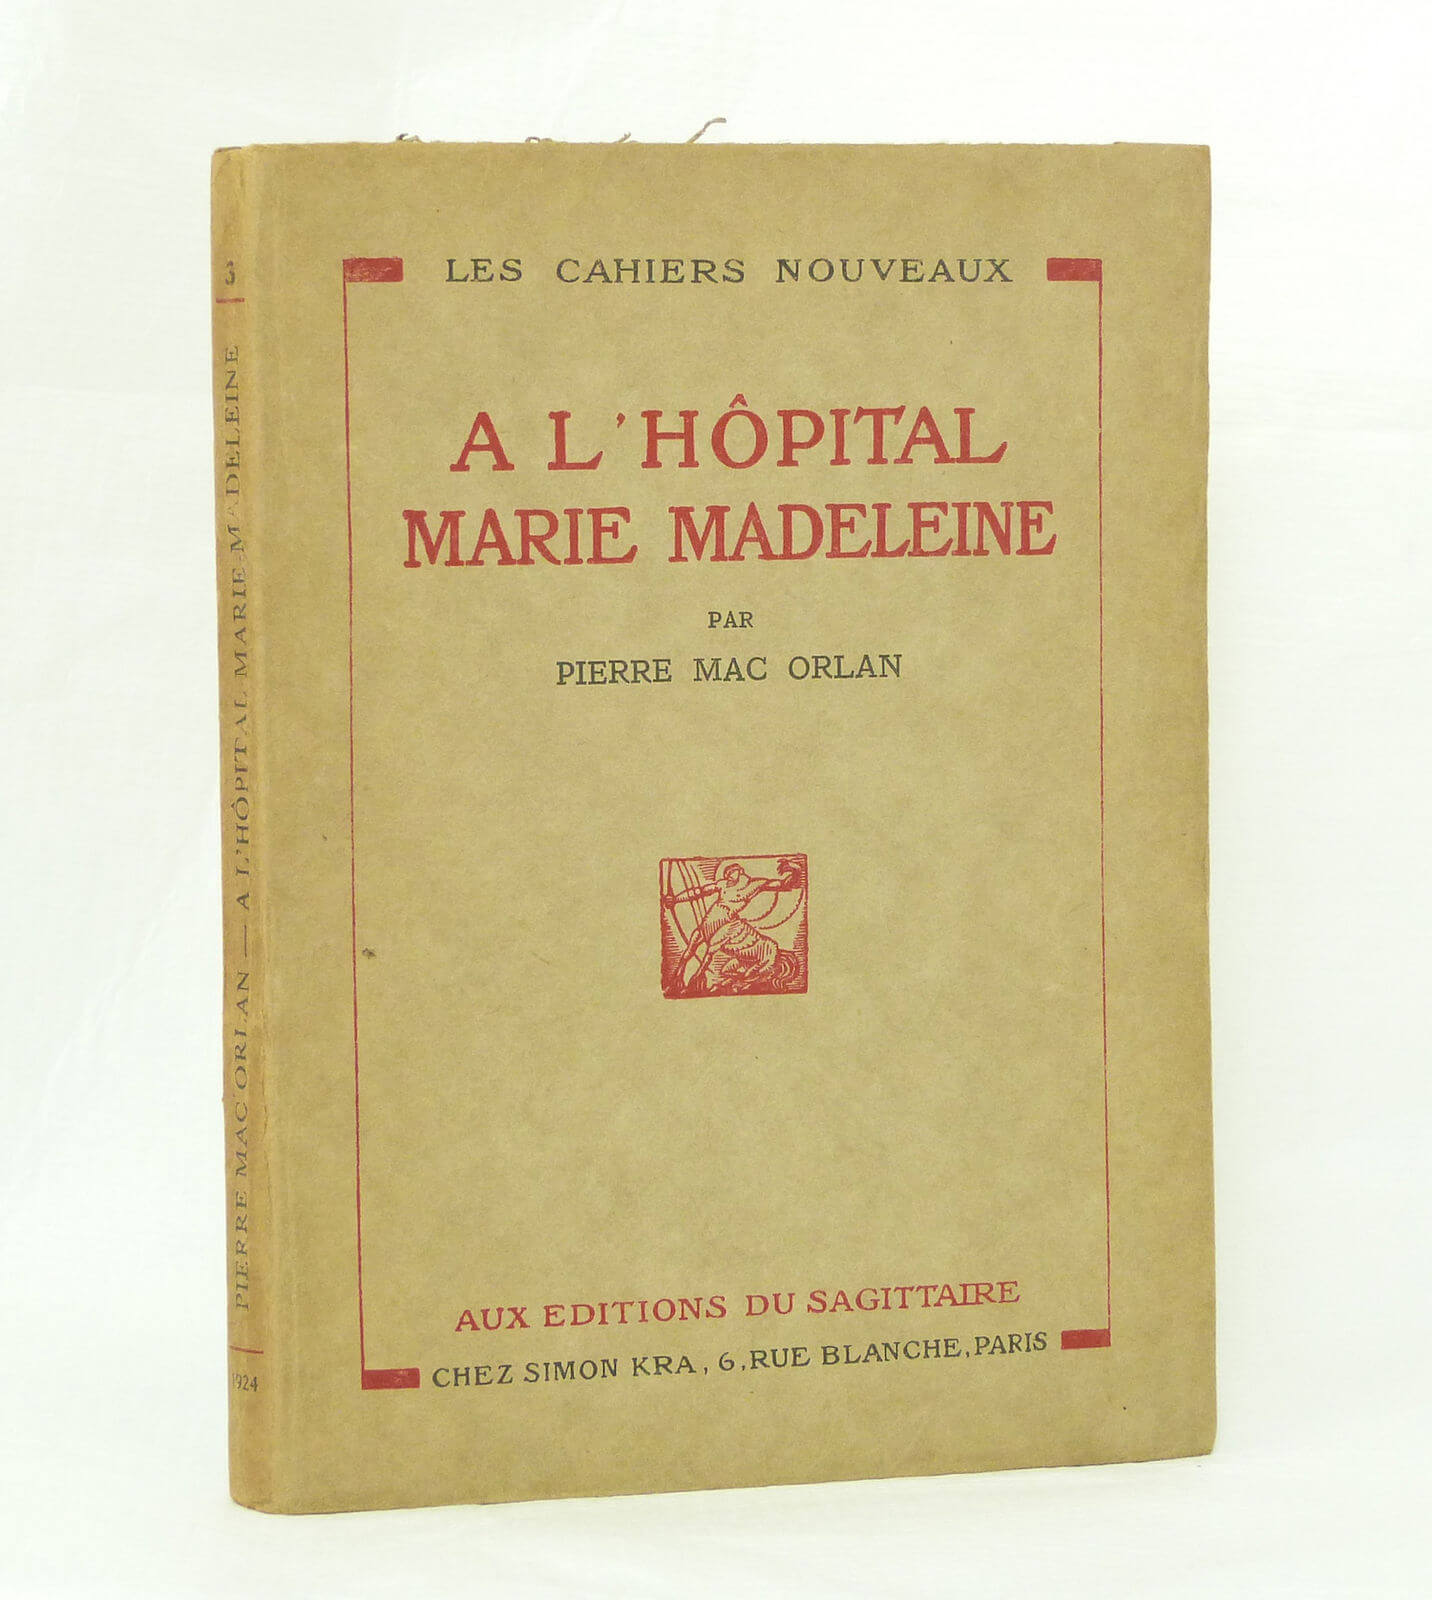  A l'hôpital Marie Madeleine